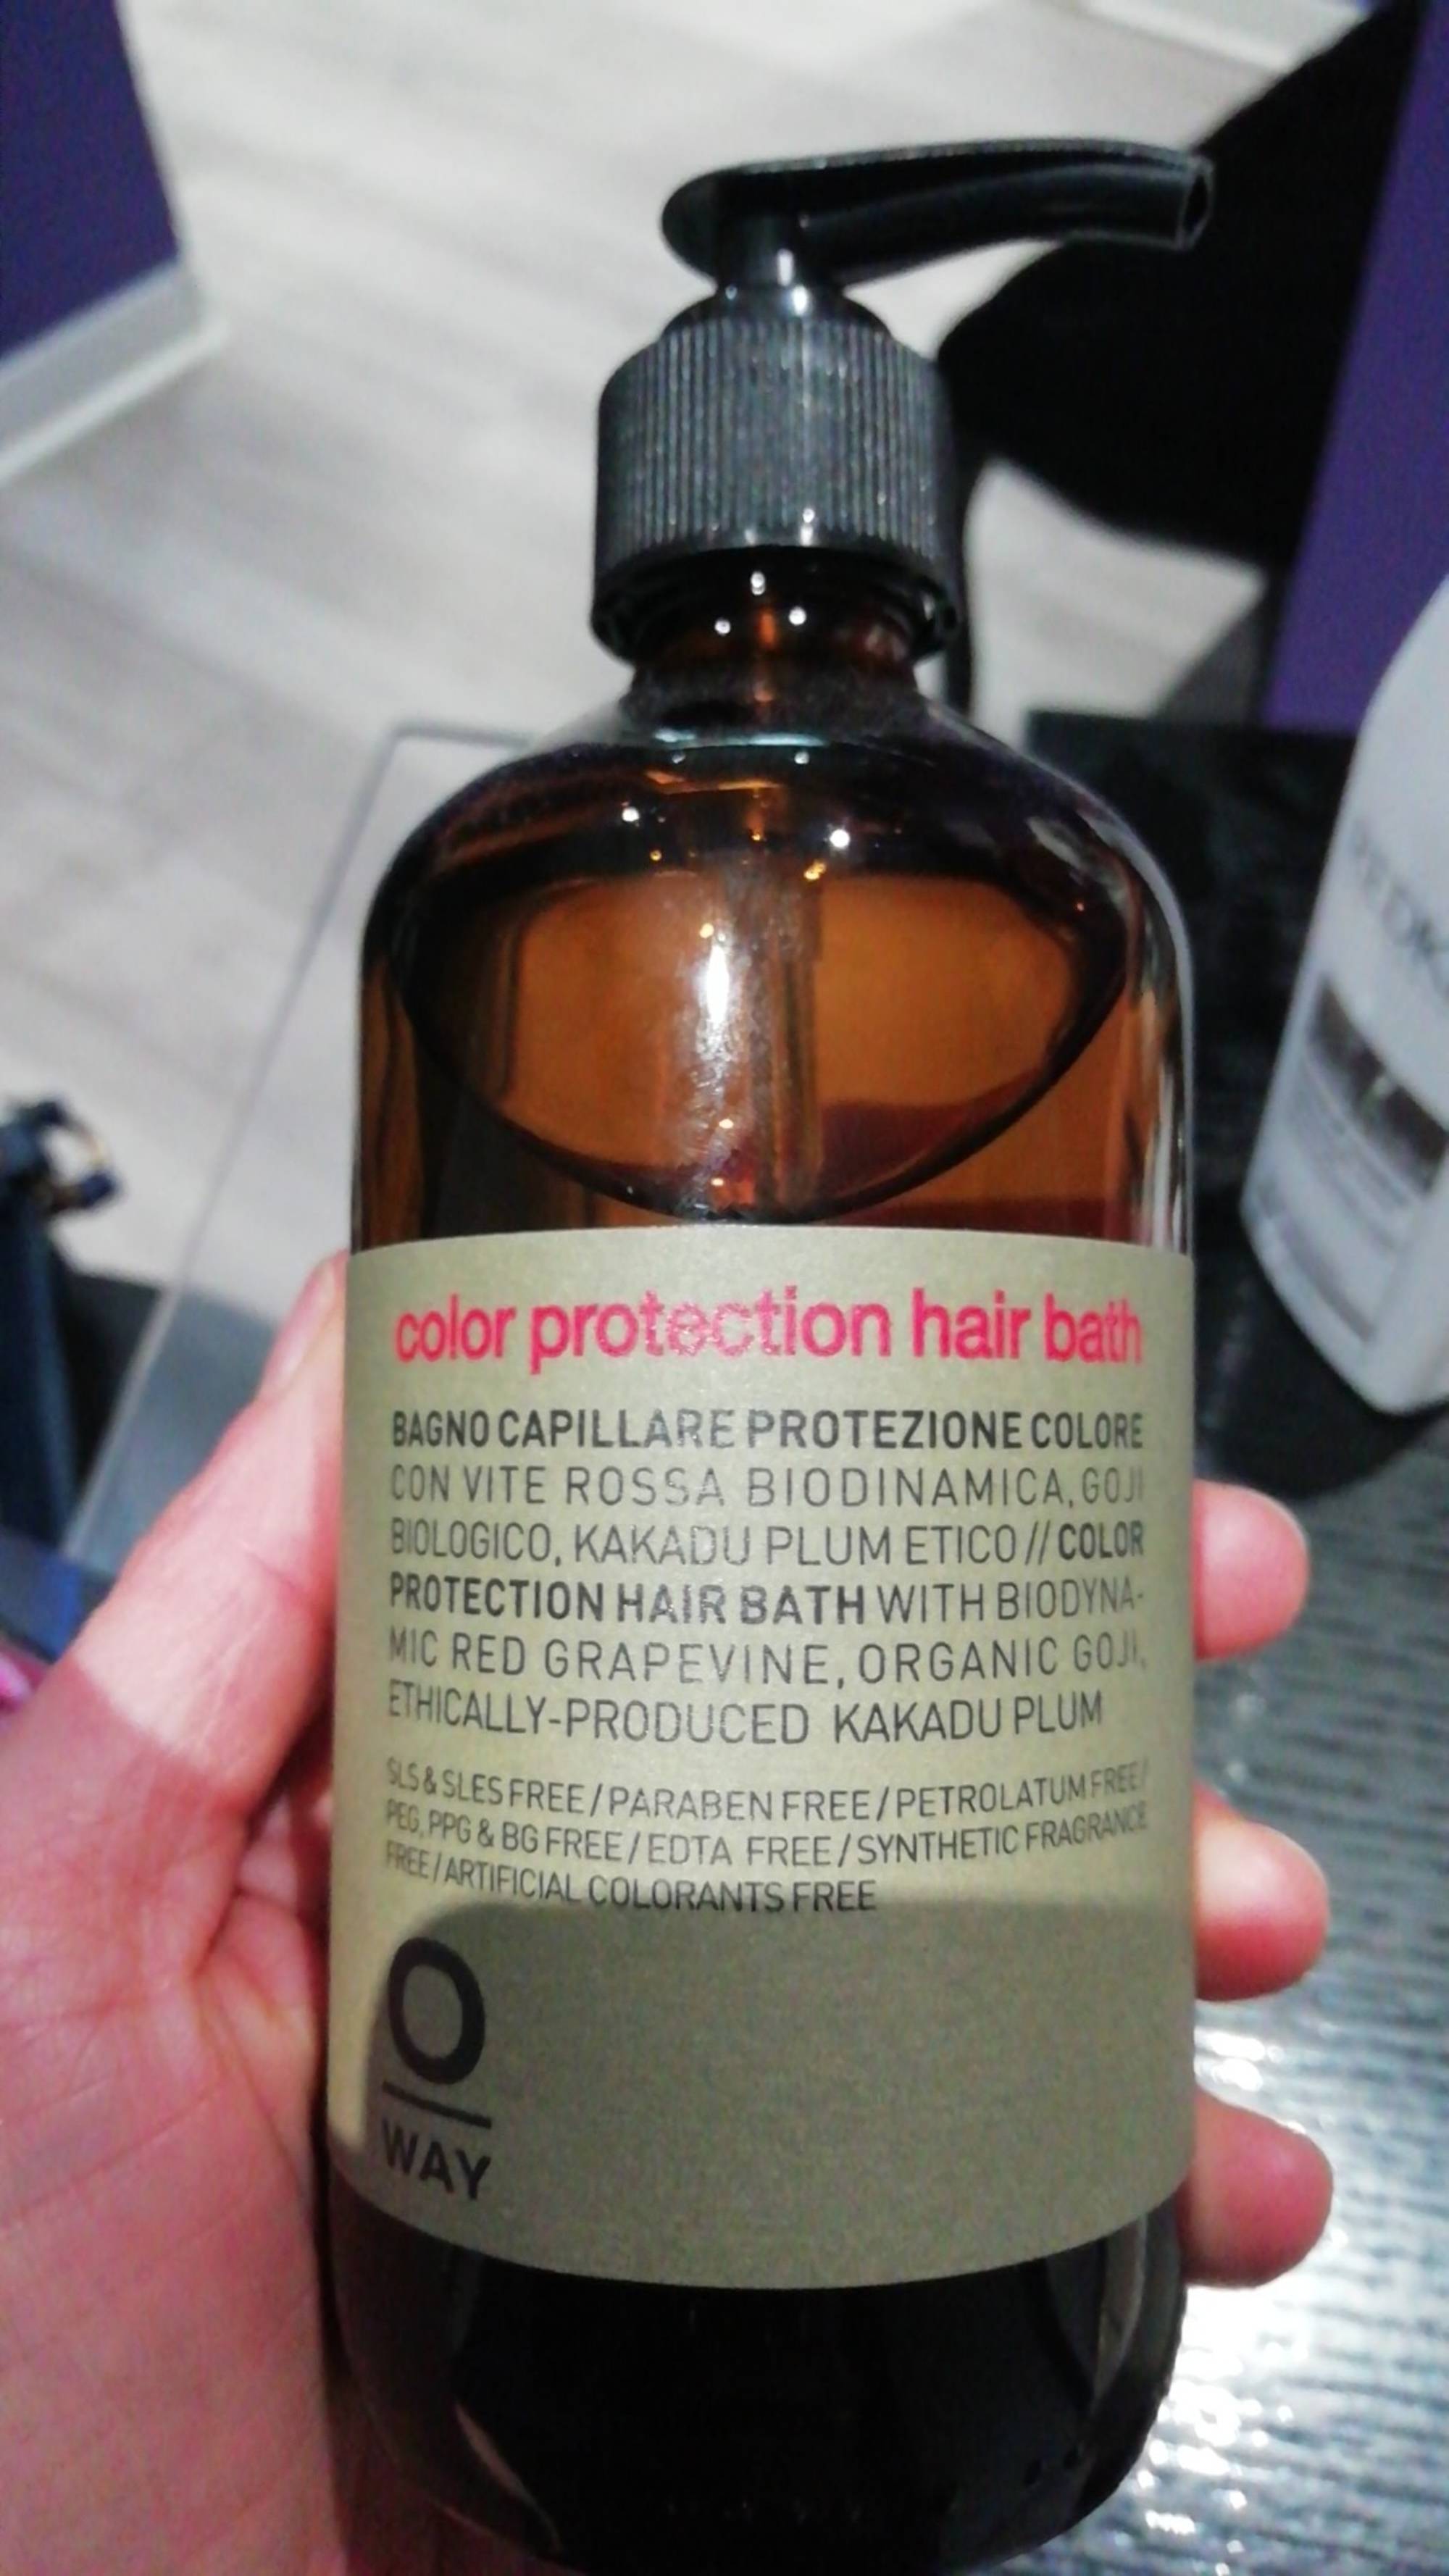 OWAY - Color protection hair bath